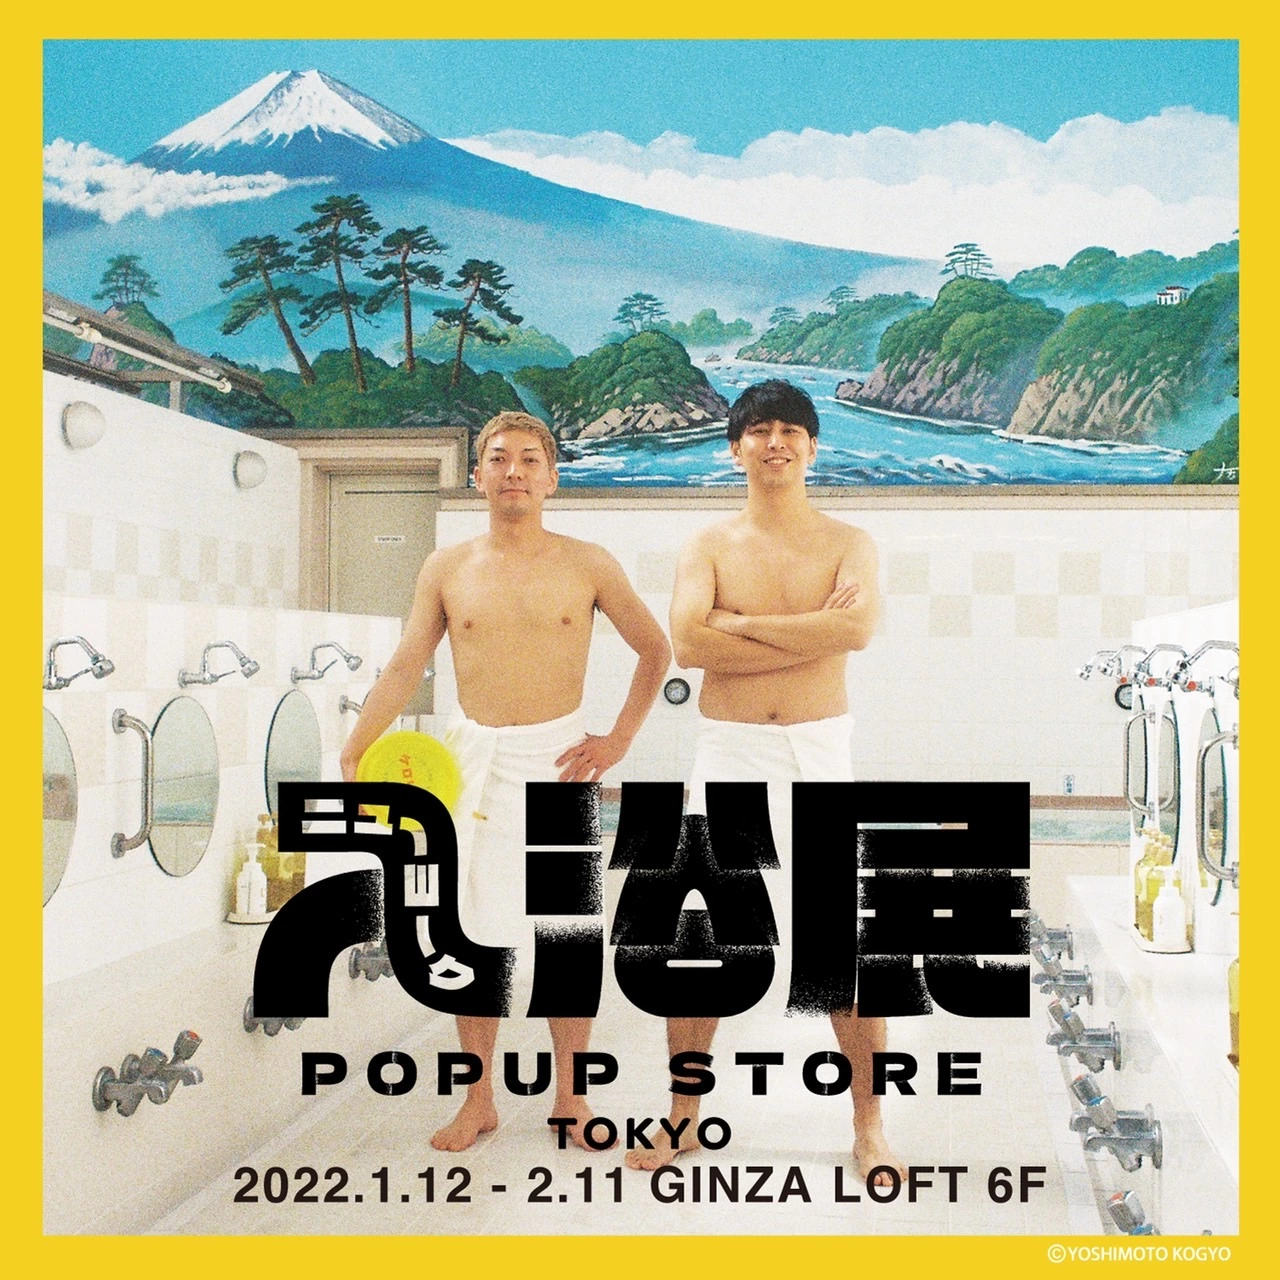 ニューヨーク入浴展 POP UP STORE TOKYO